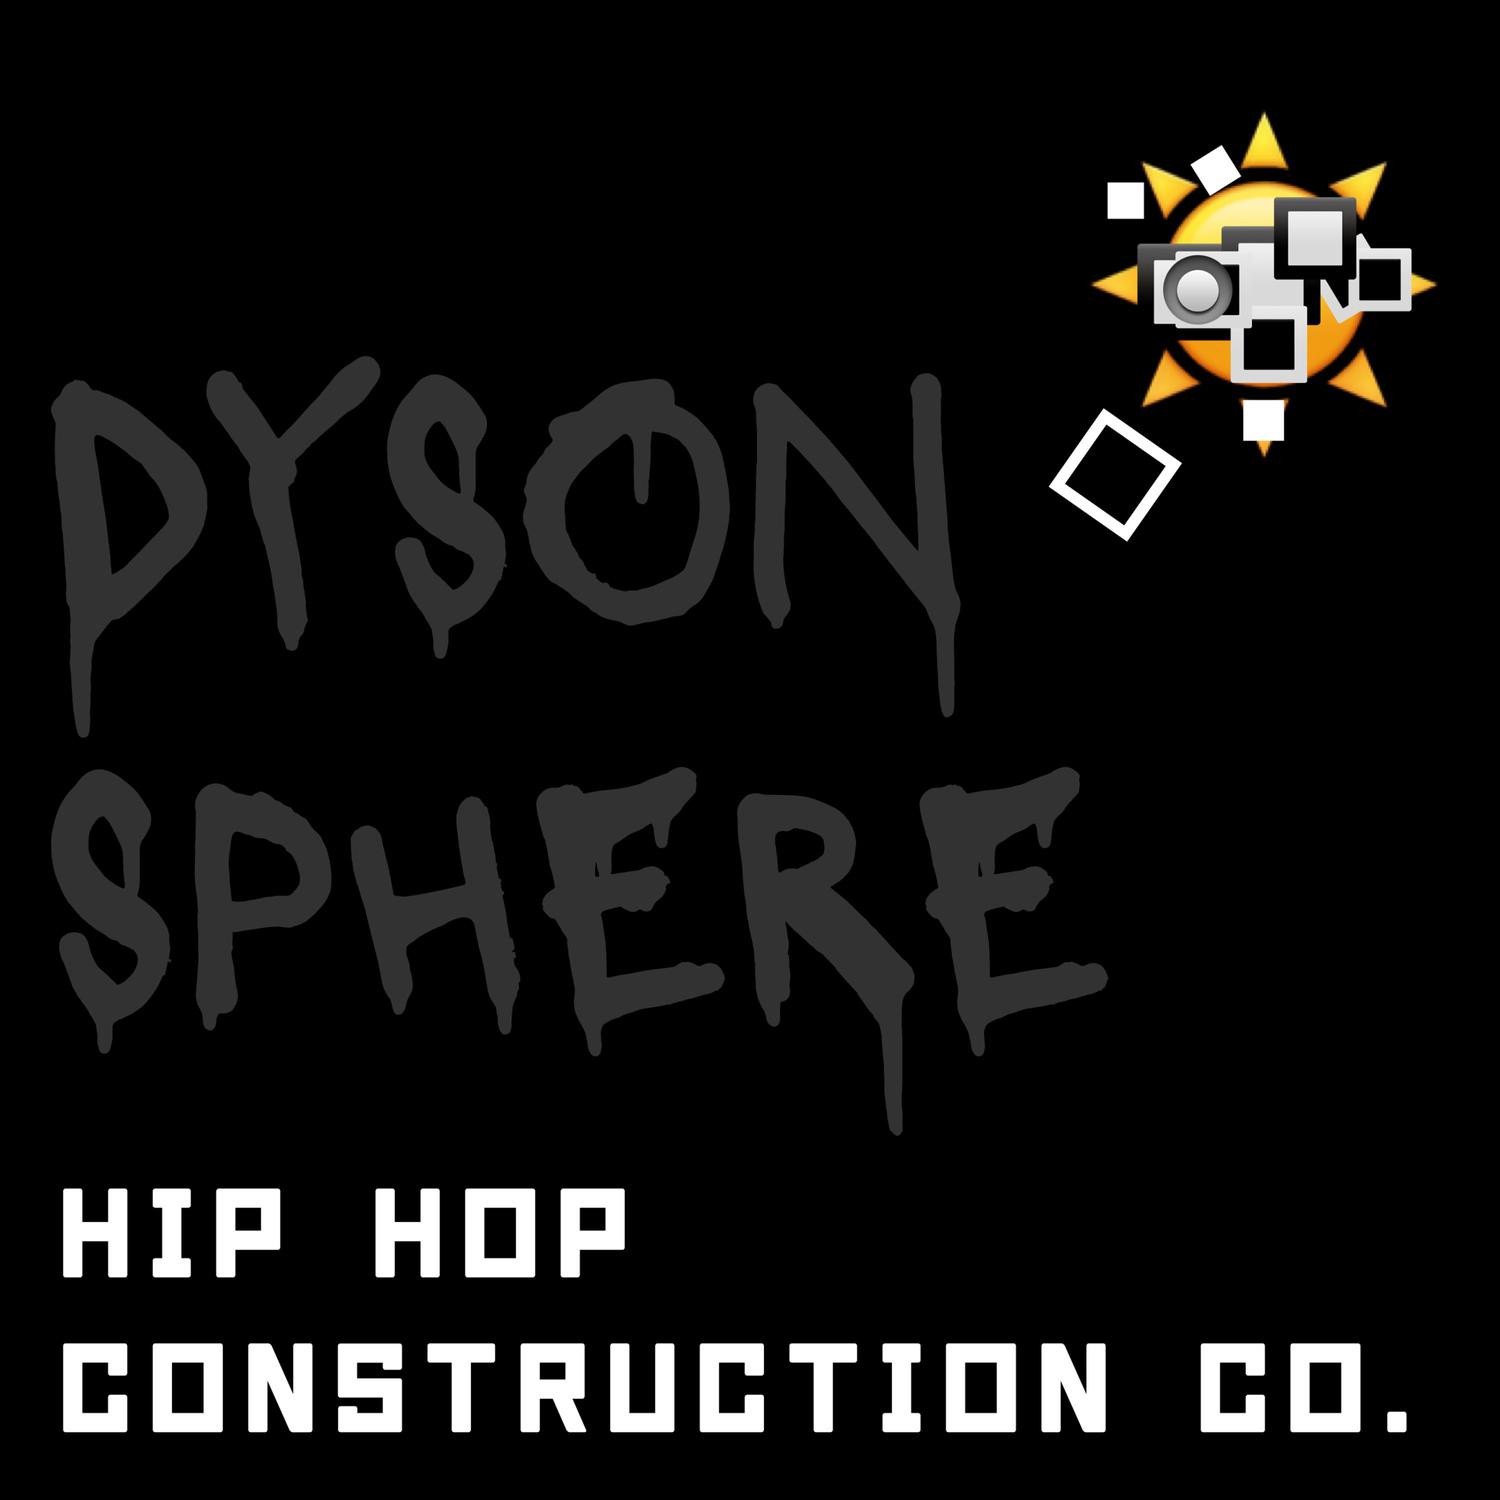 Hip Hop Construction Co. - Dyson Sphere, Pt. 362